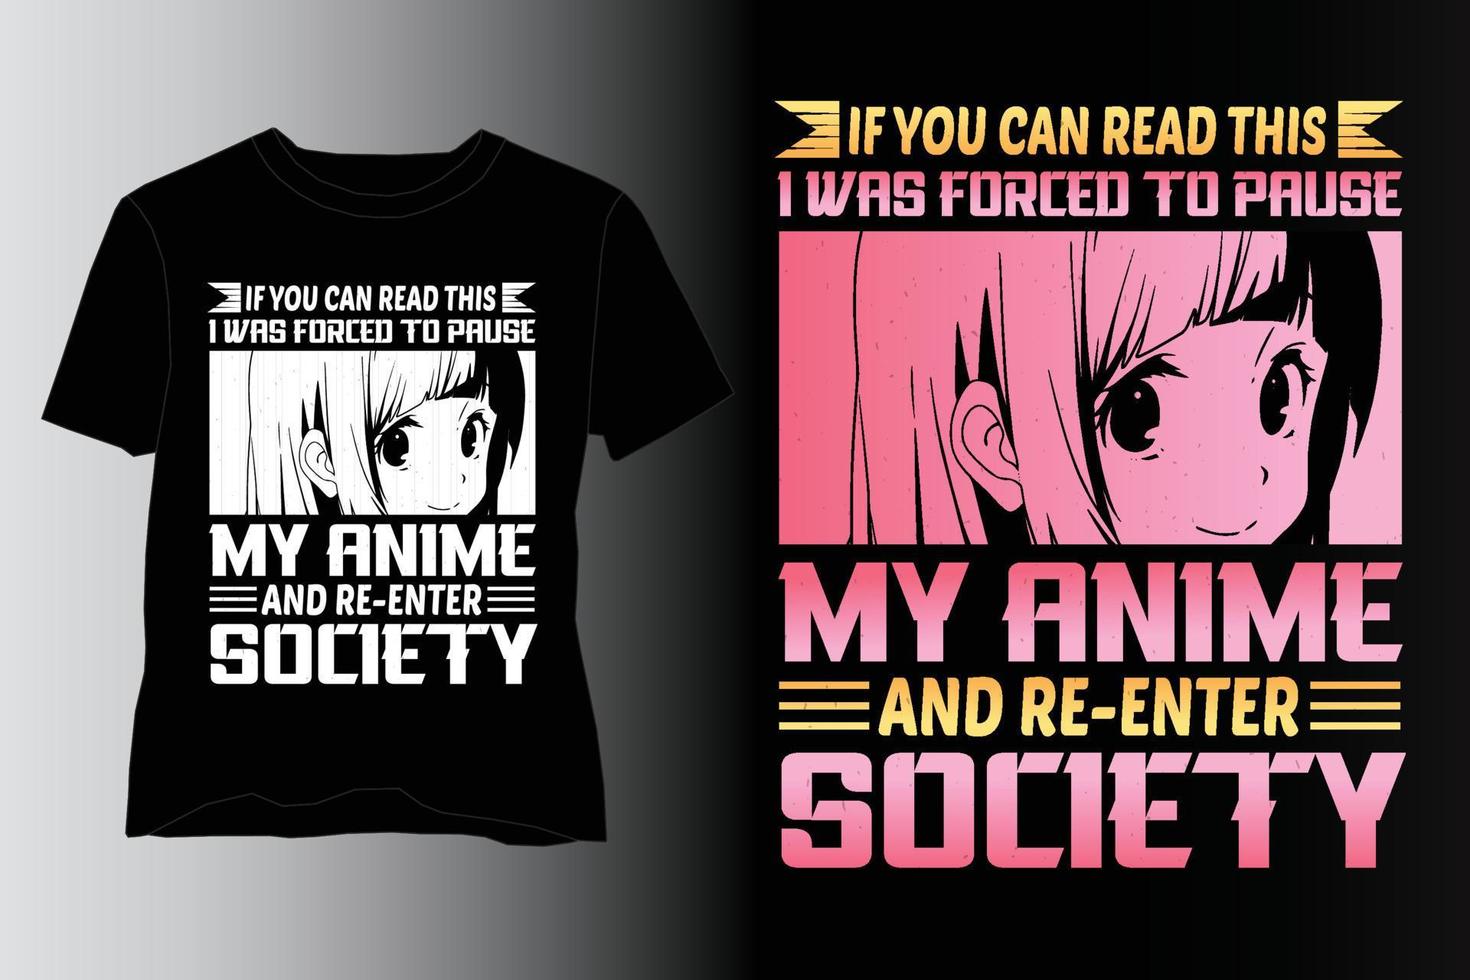 gezwungen, meinen Anime zu pausieren und wieder in die Gesellschaft einzutreten T-Shirt-Design, Anime-T-Shirt-Design, Anime-Liebhaber-T-Shirt-Design vektor